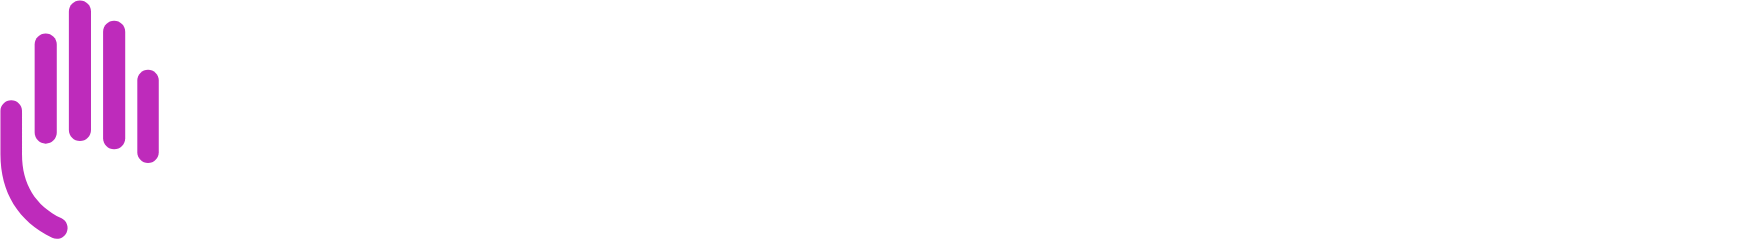 Bristol-Myers Squibb logo grand pour les fonds sombres (PNG transparent)